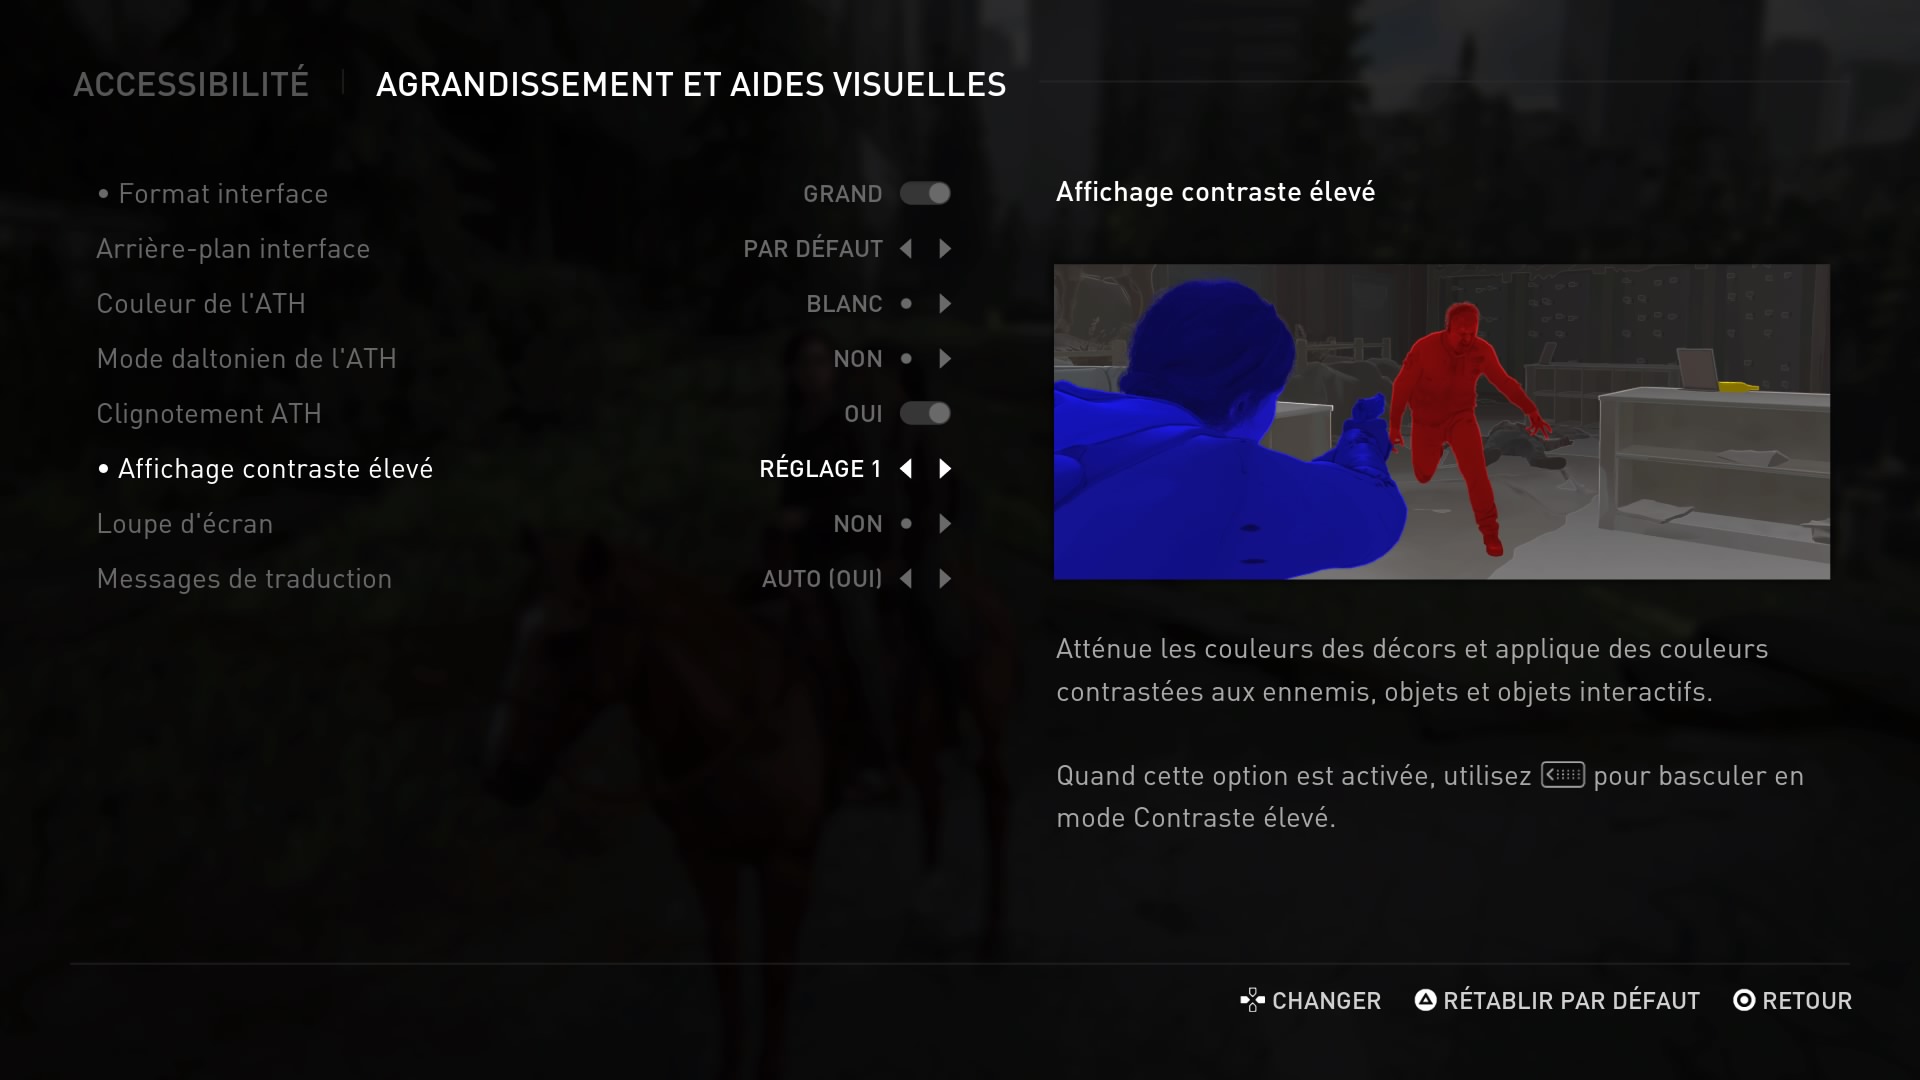 Le menu d'aide visuelle dans The Last of Us Part 2